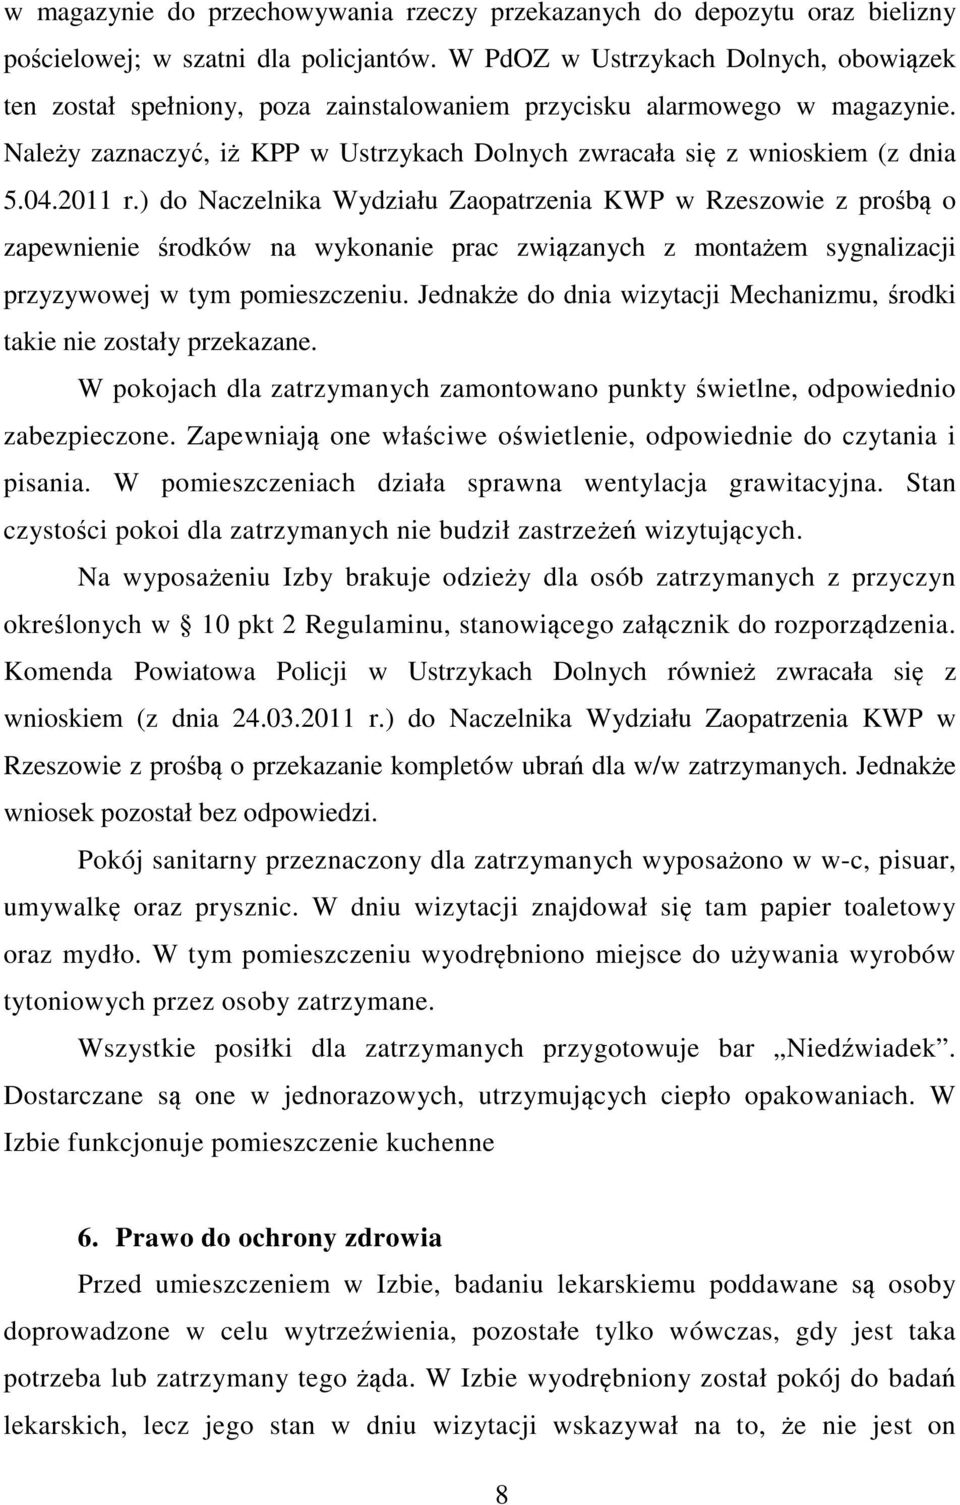 2011 r.) do Naczelnika Wydziału Zaopatrzenia KWP w Rzeszowie z prośbą o zapewnienie środków na wykonanie prac związanych z montażem sygnalizacji przyzywowej w tym pomieszczeniu.